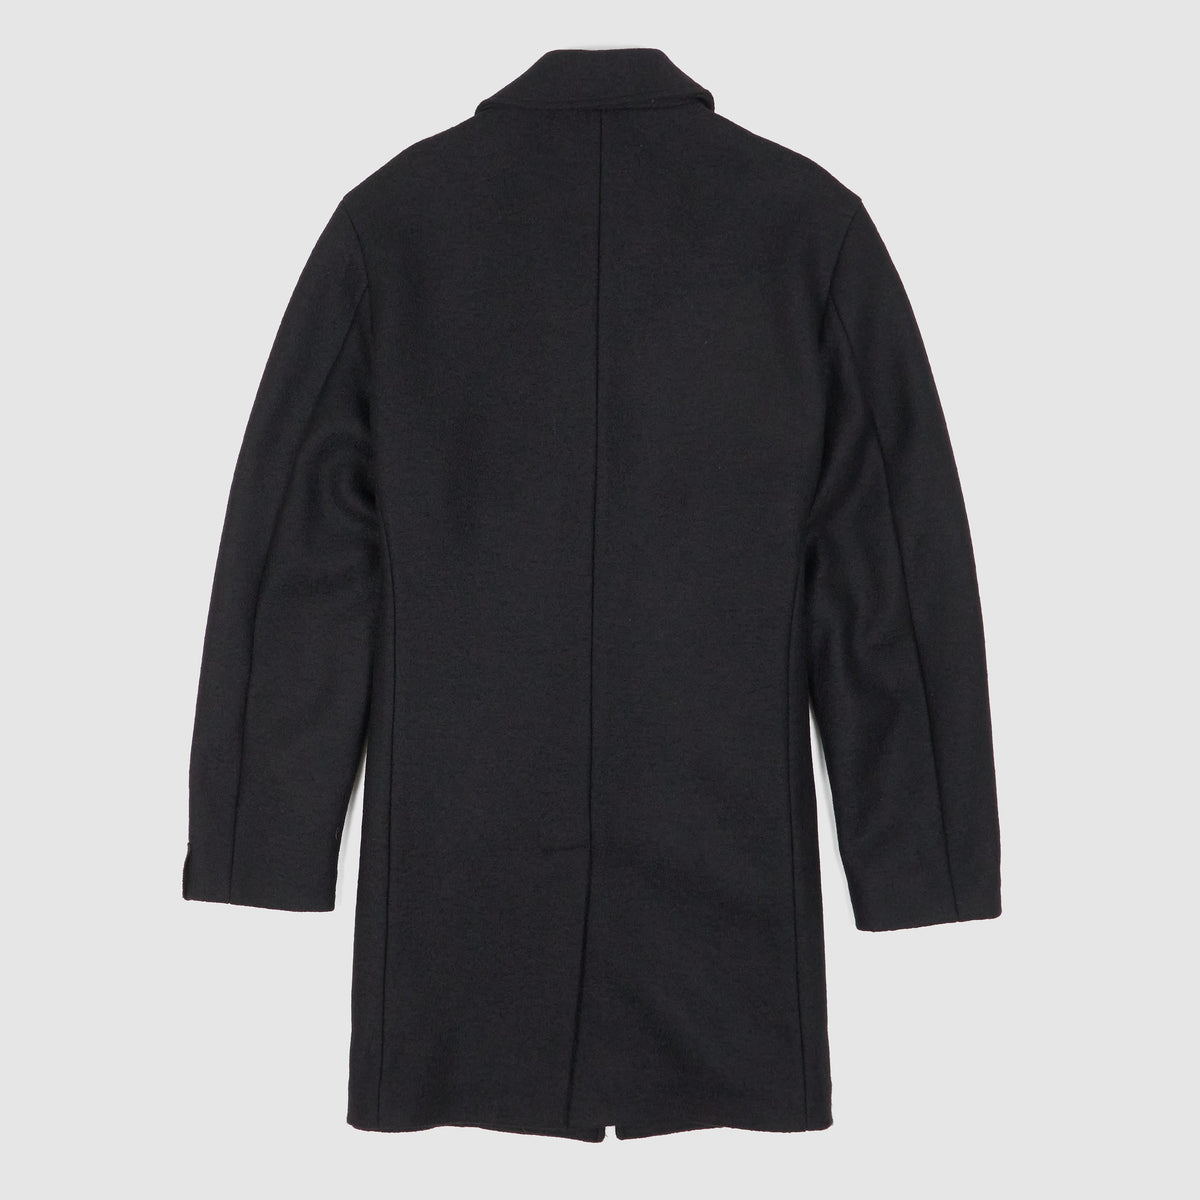 Palto Classic Wool Coat  Medium Length